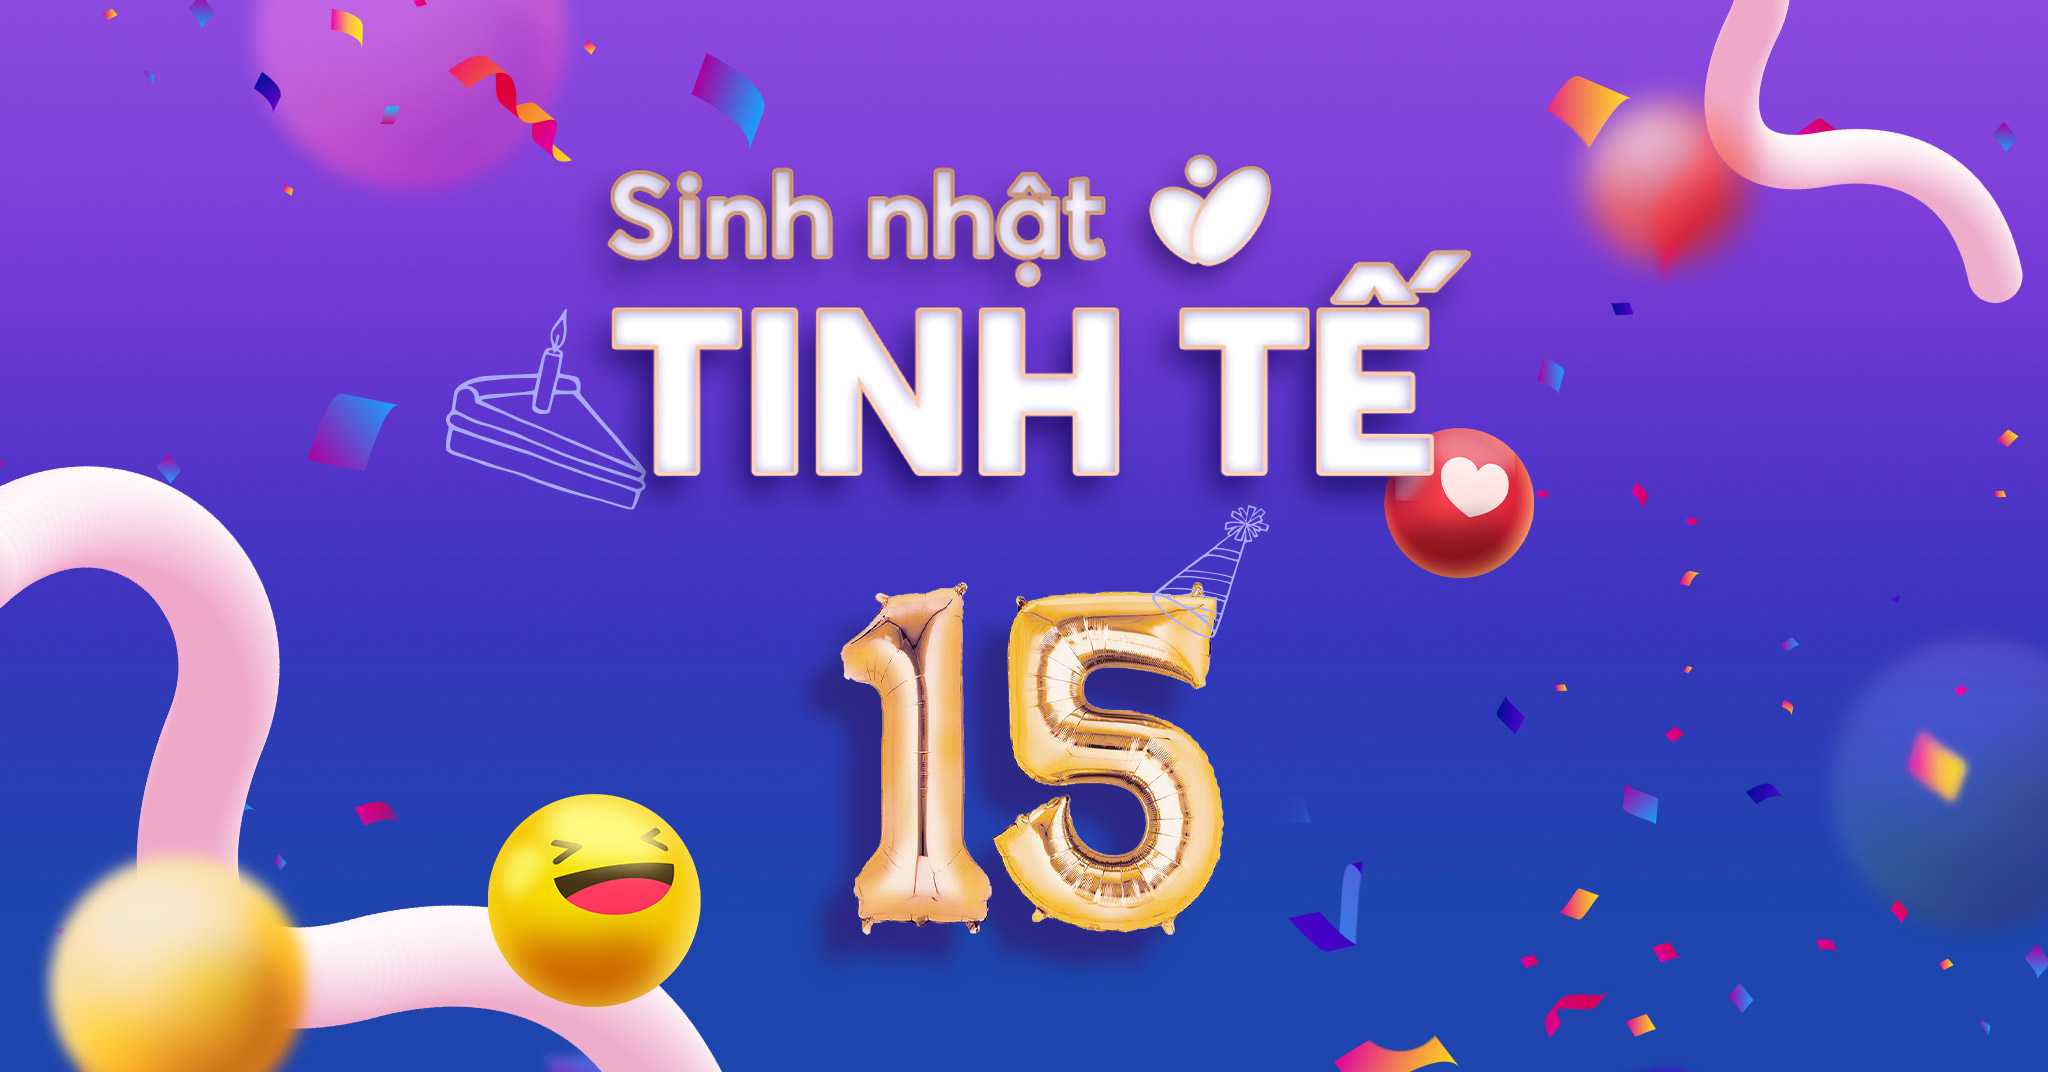 Chuỗi sự kiện mừng sinh nhật Minigame bình chọn tính năng yêu thích 2022